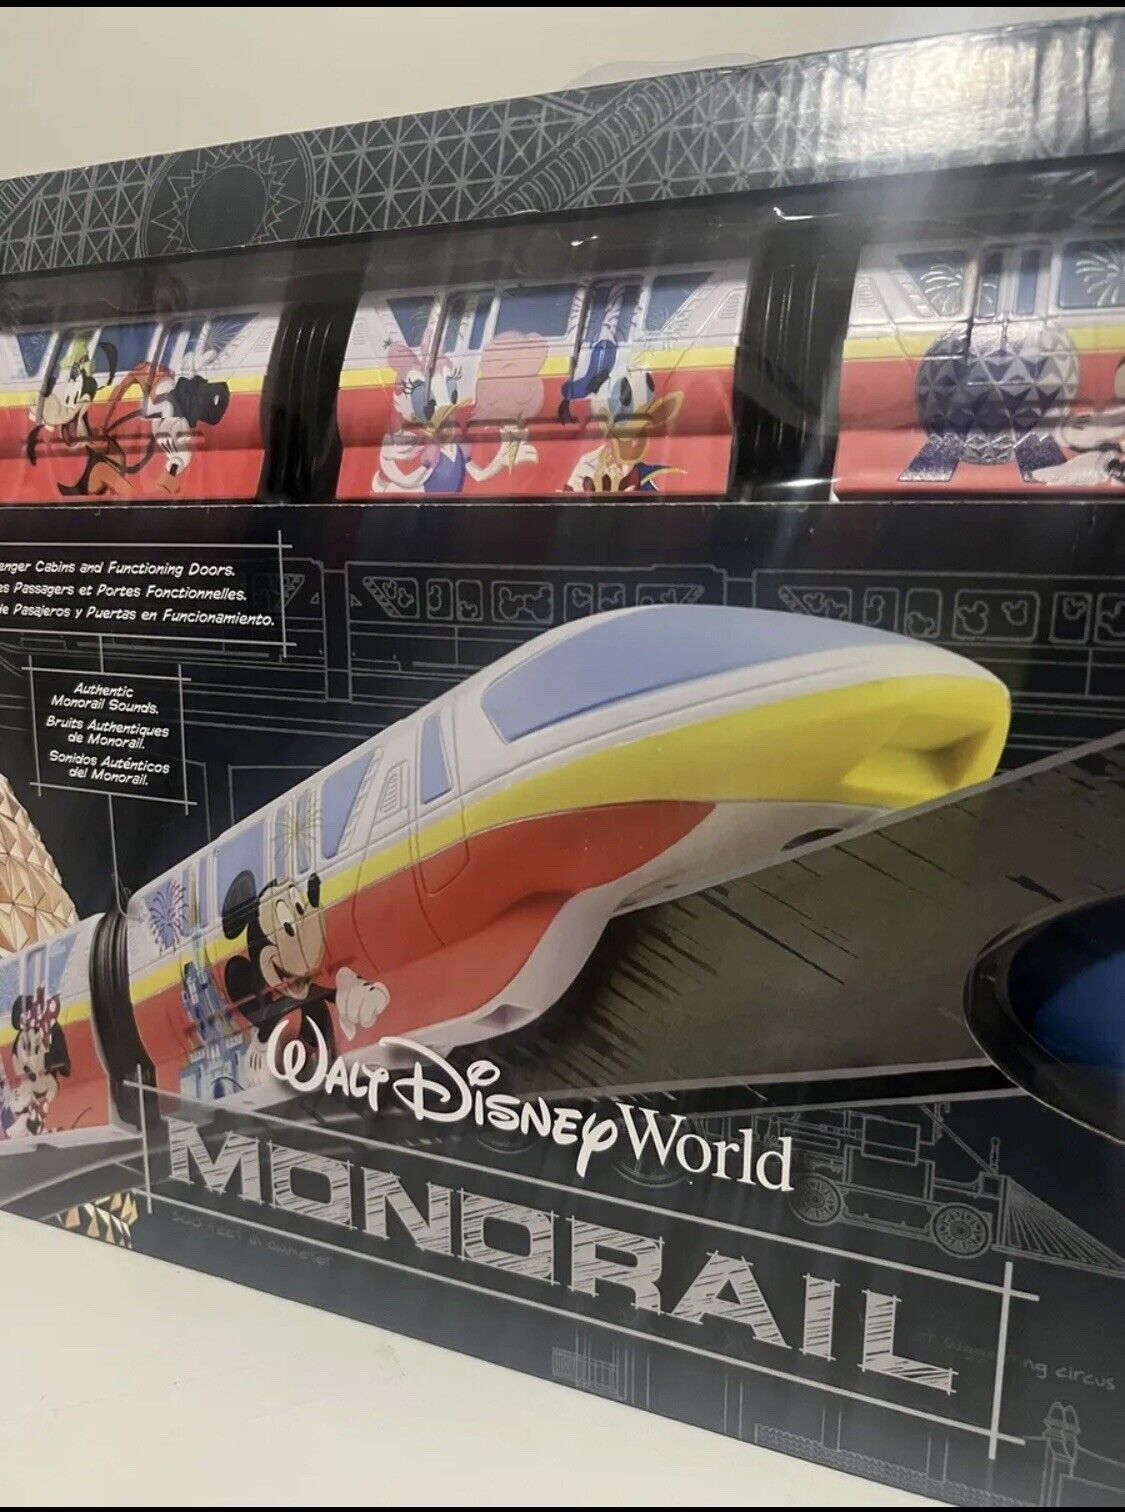 2023 Disney Parks Walt Disney World Mickey Minnie Goofy Monorail Playset New